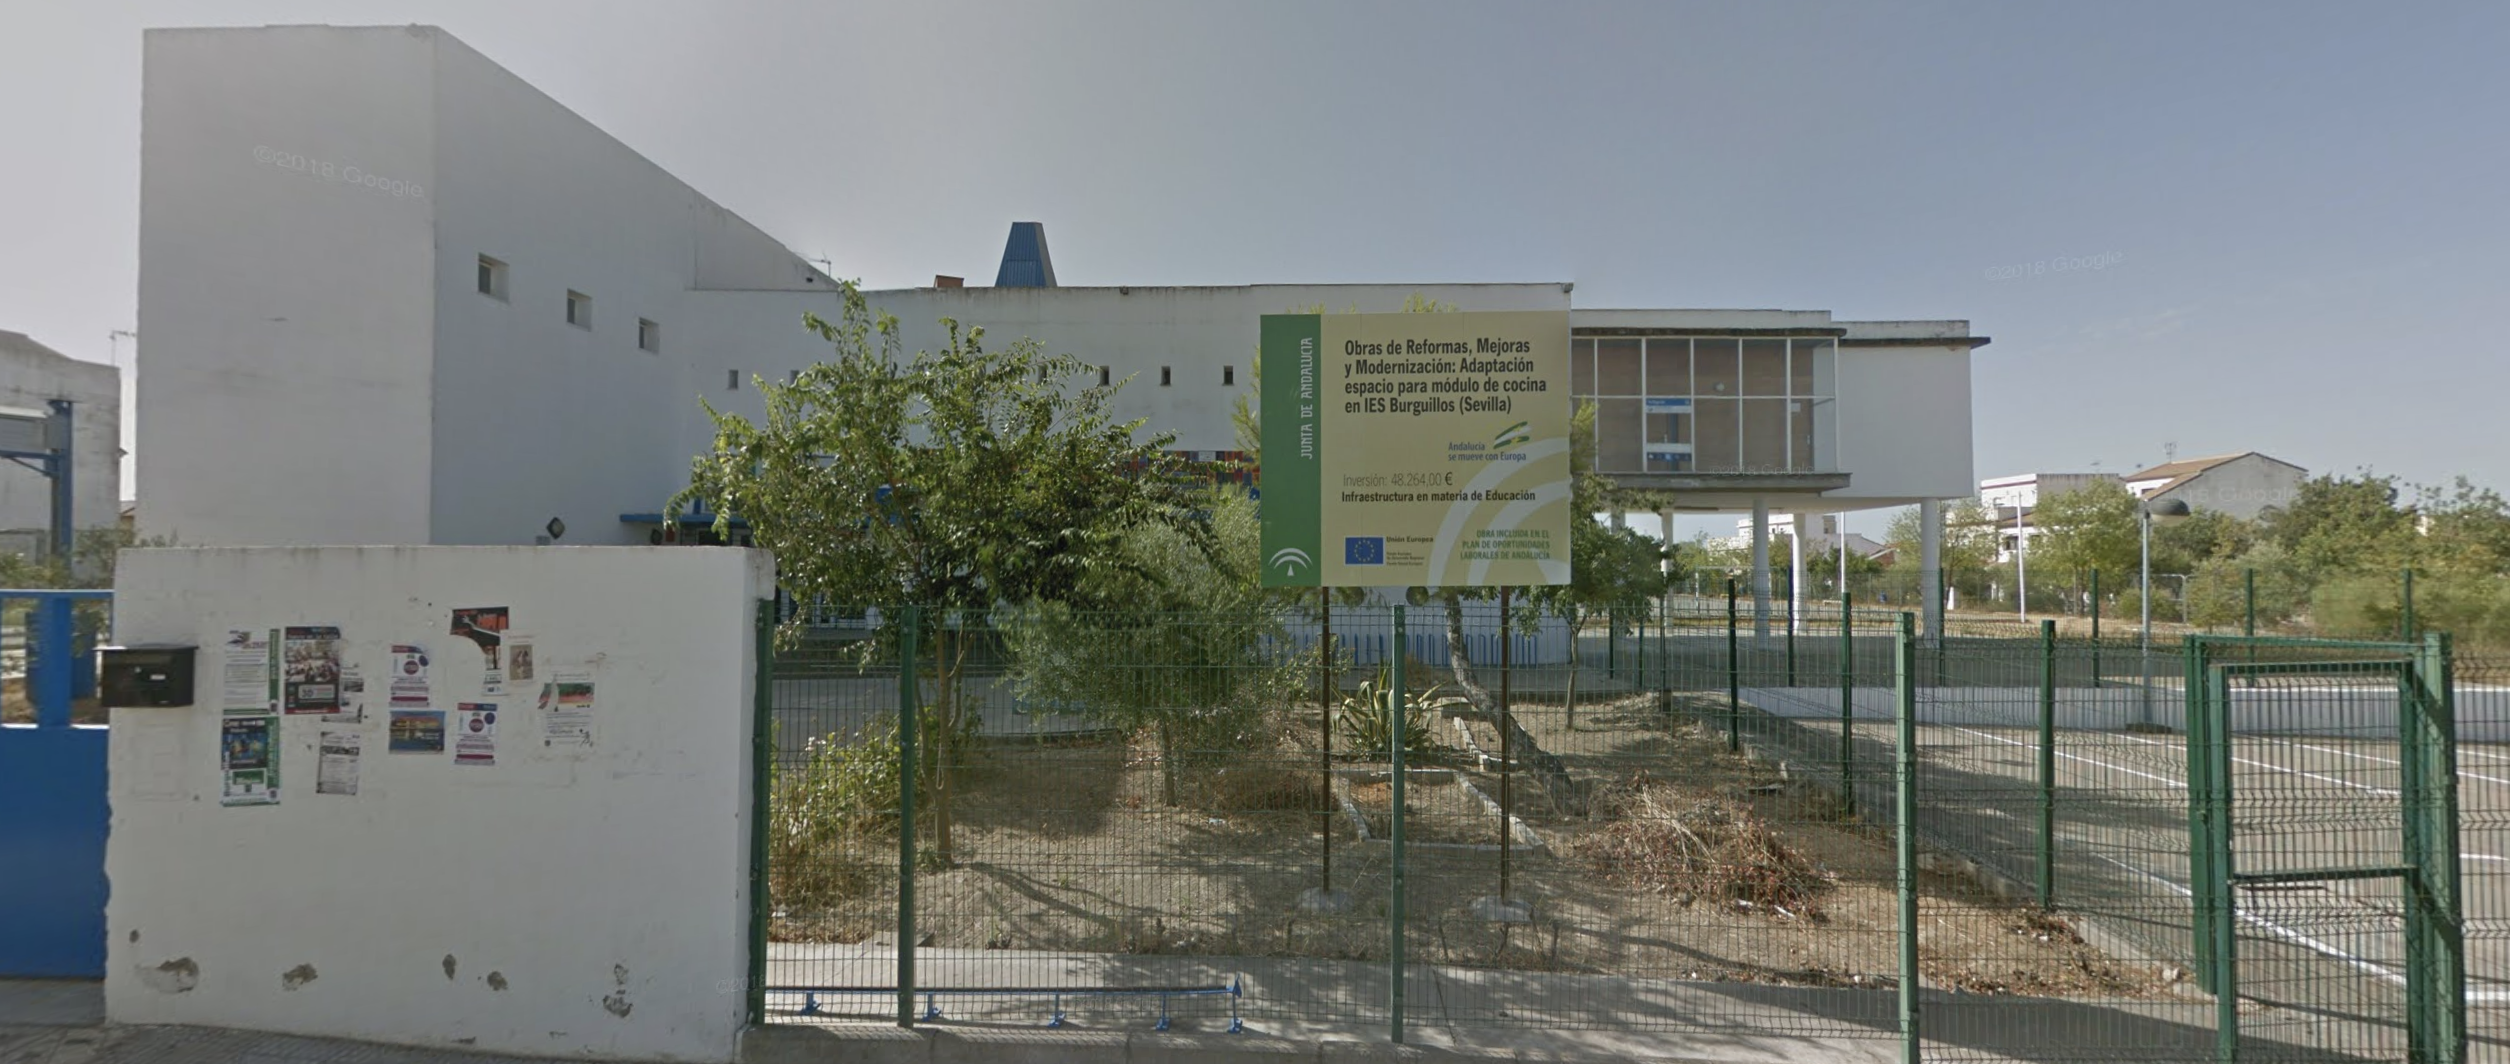 Indignación en un instituto de Sevilla: Educación cuestiona la profesionalidad de un profesor agredido. En la imagen, vista del IES Burguillos (Google Maps).